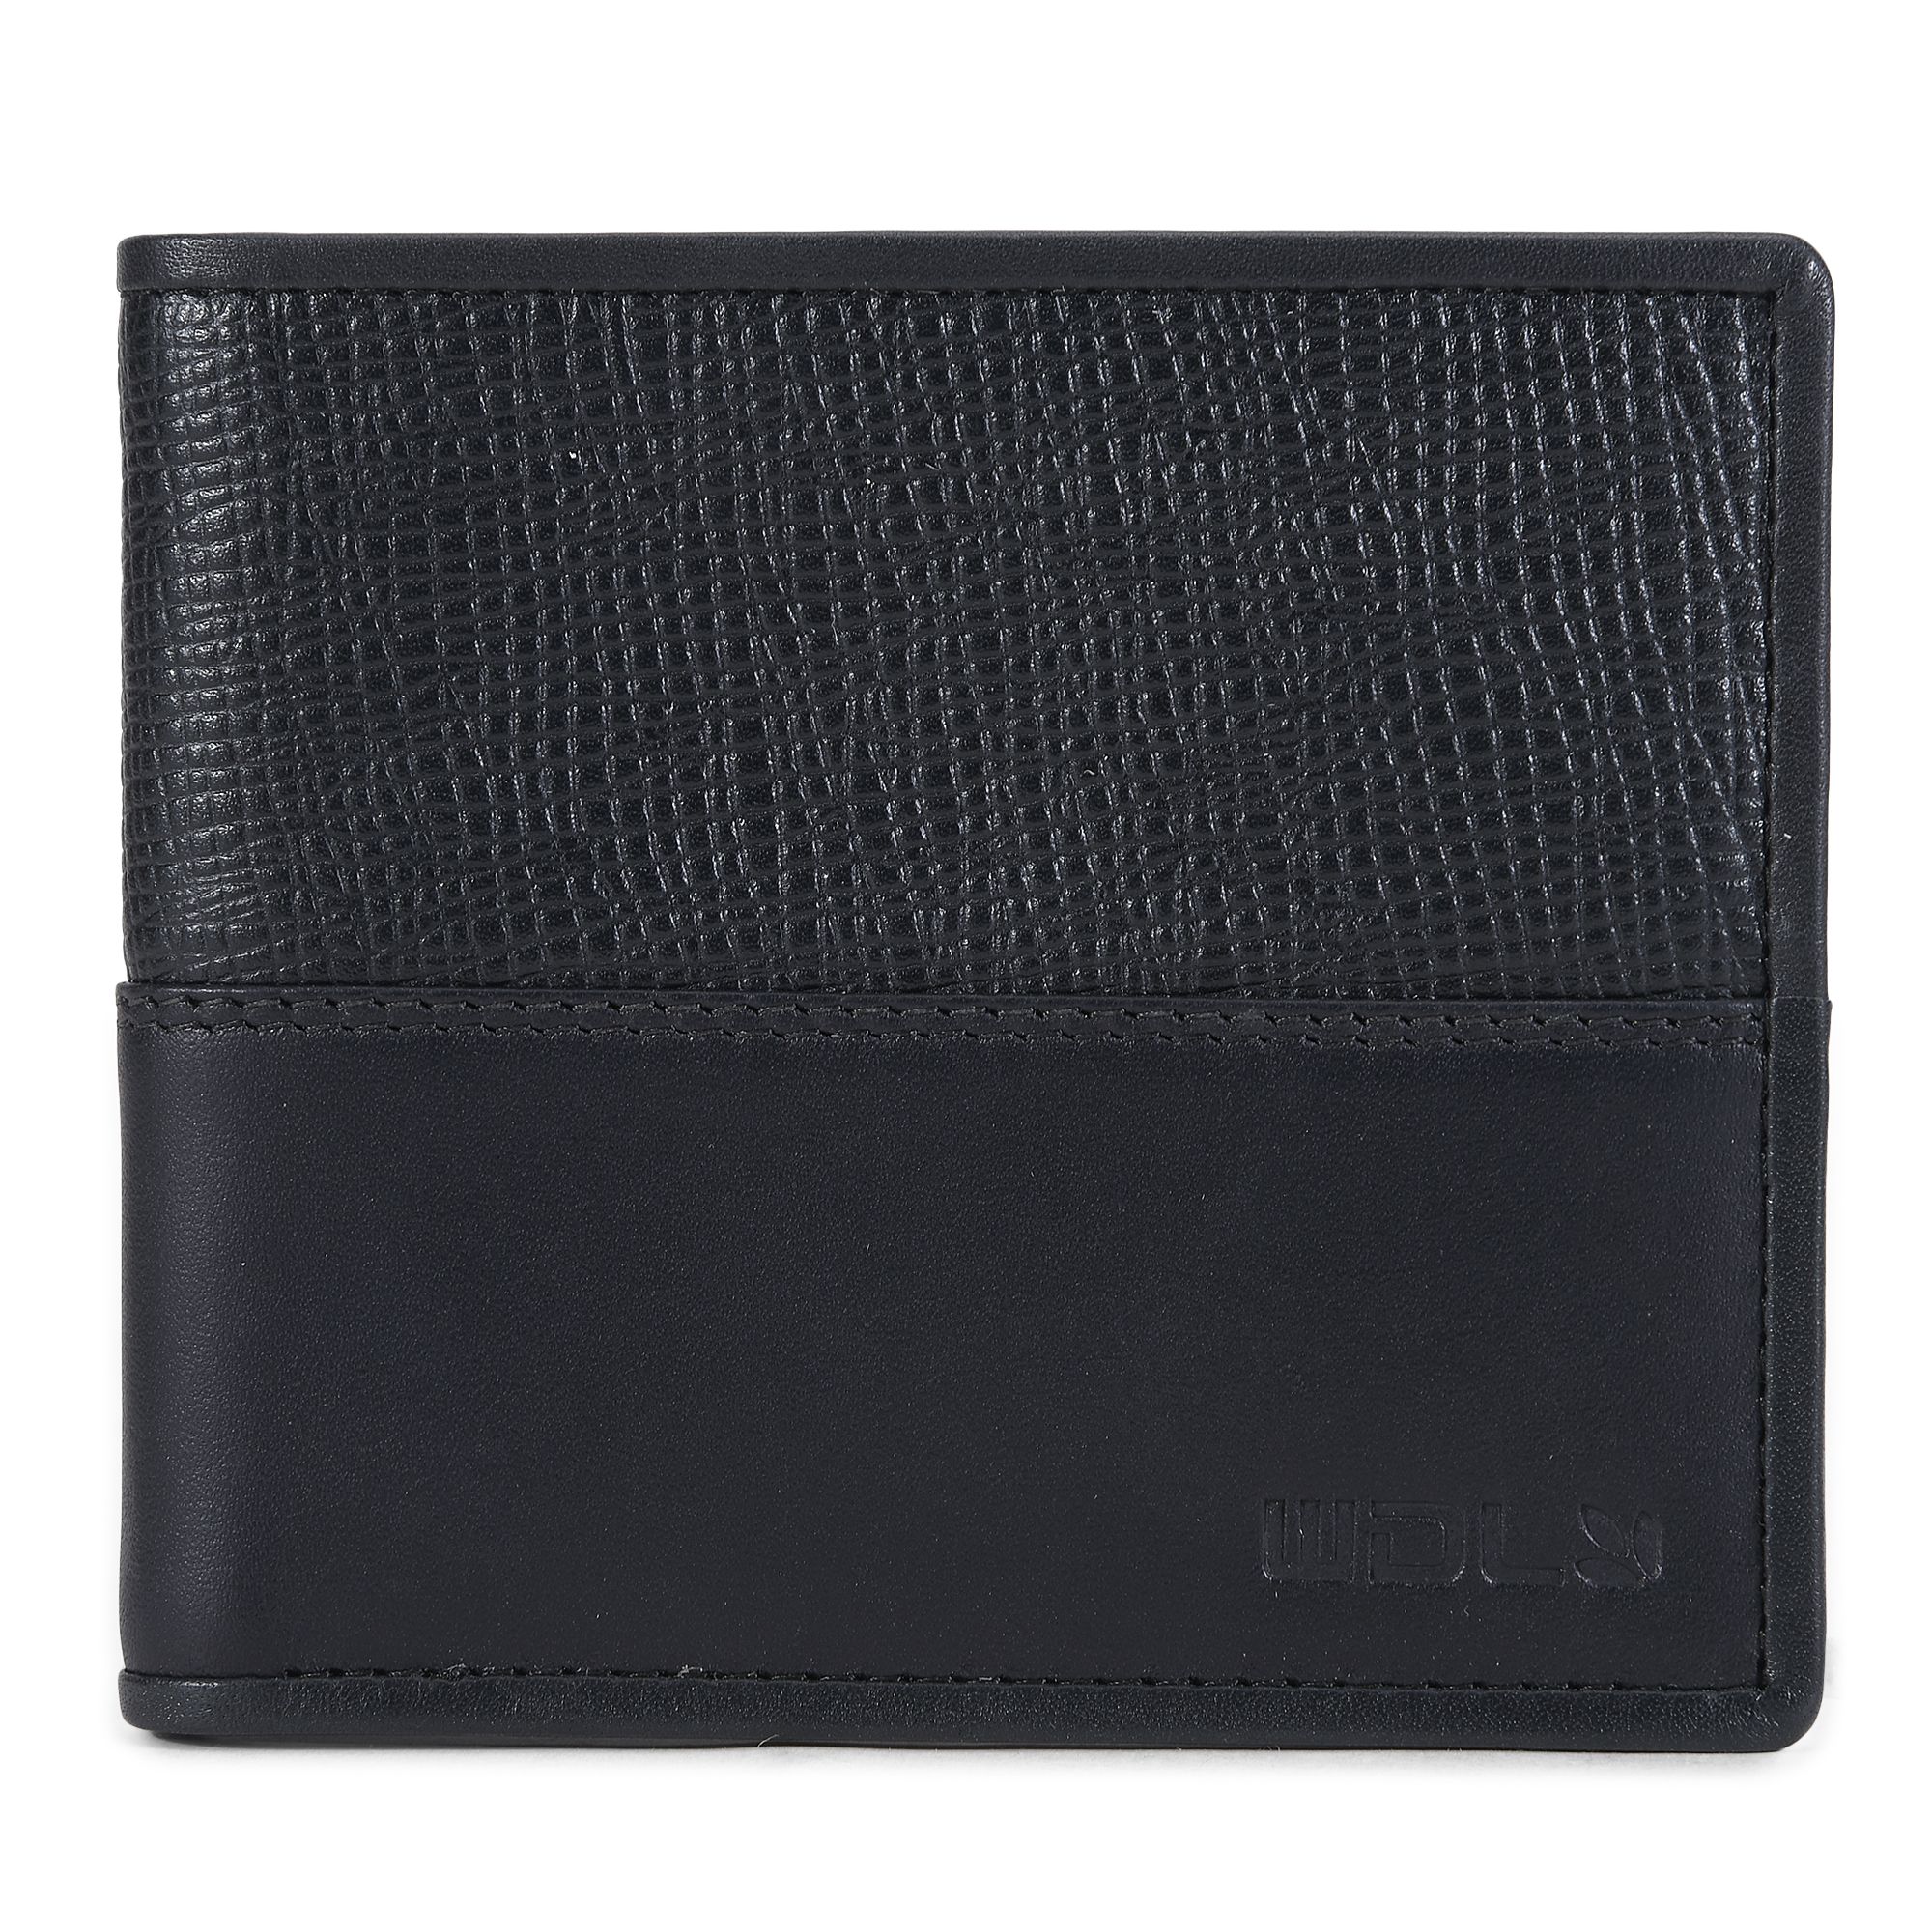 Black bifold leather wallet for men